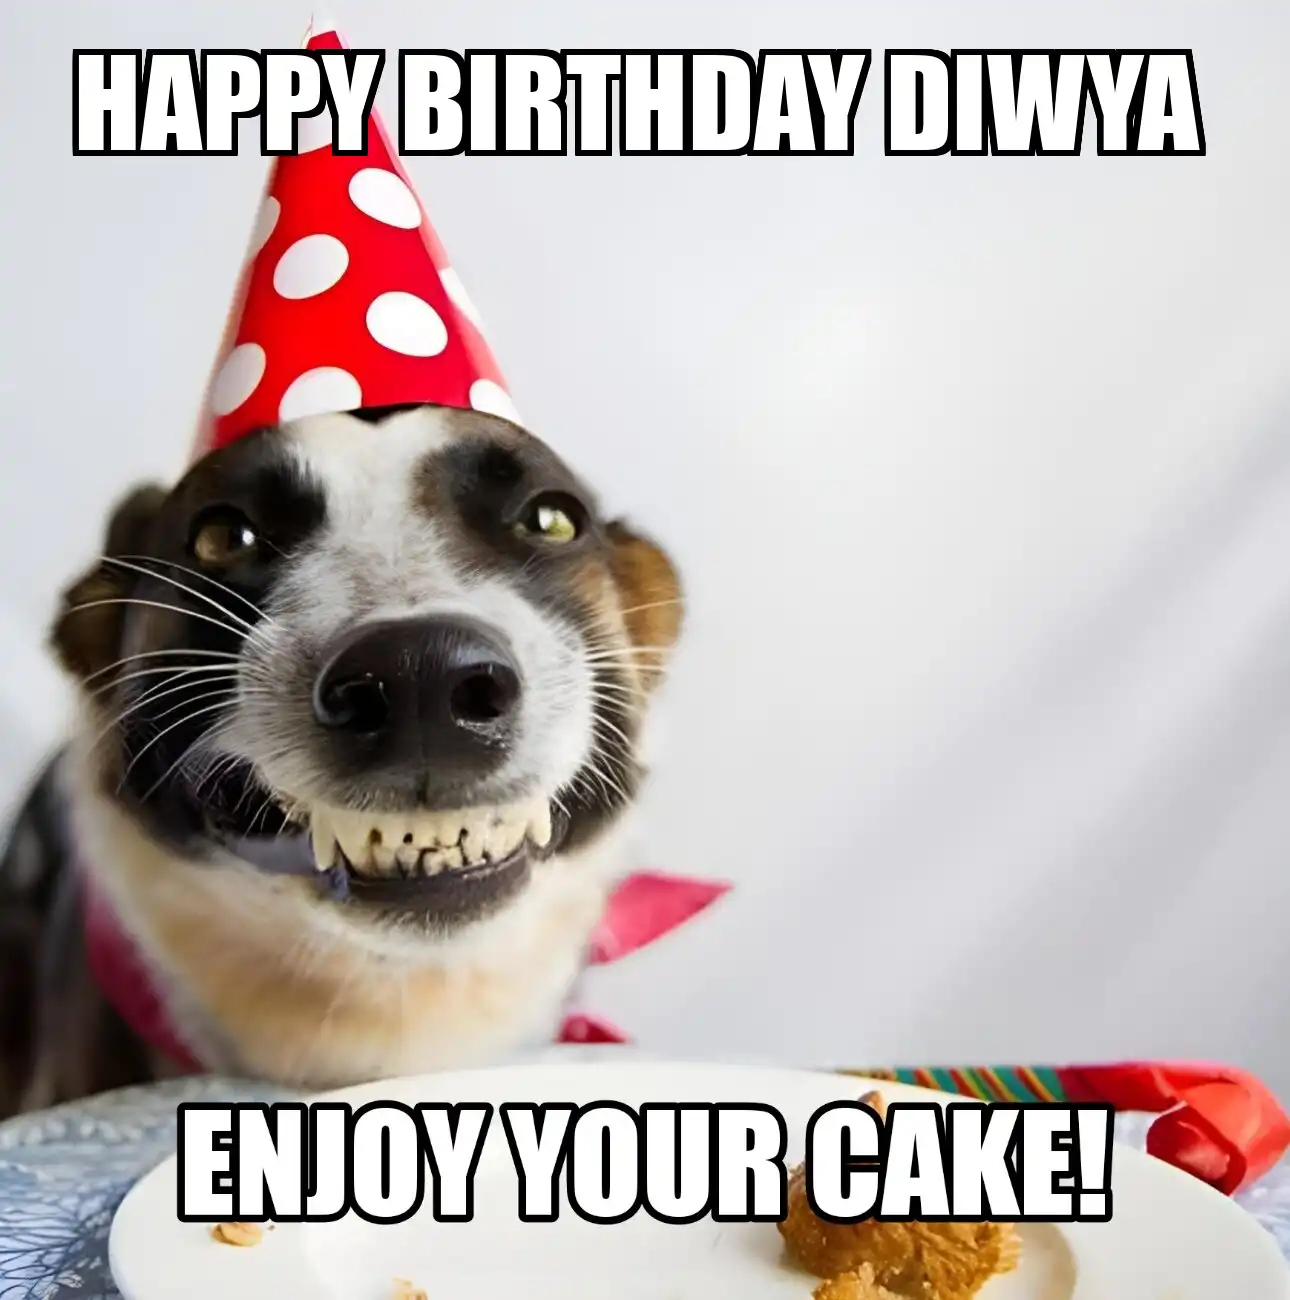 Happy Birthday Diwya Enjoy Your Cake Dog Meme